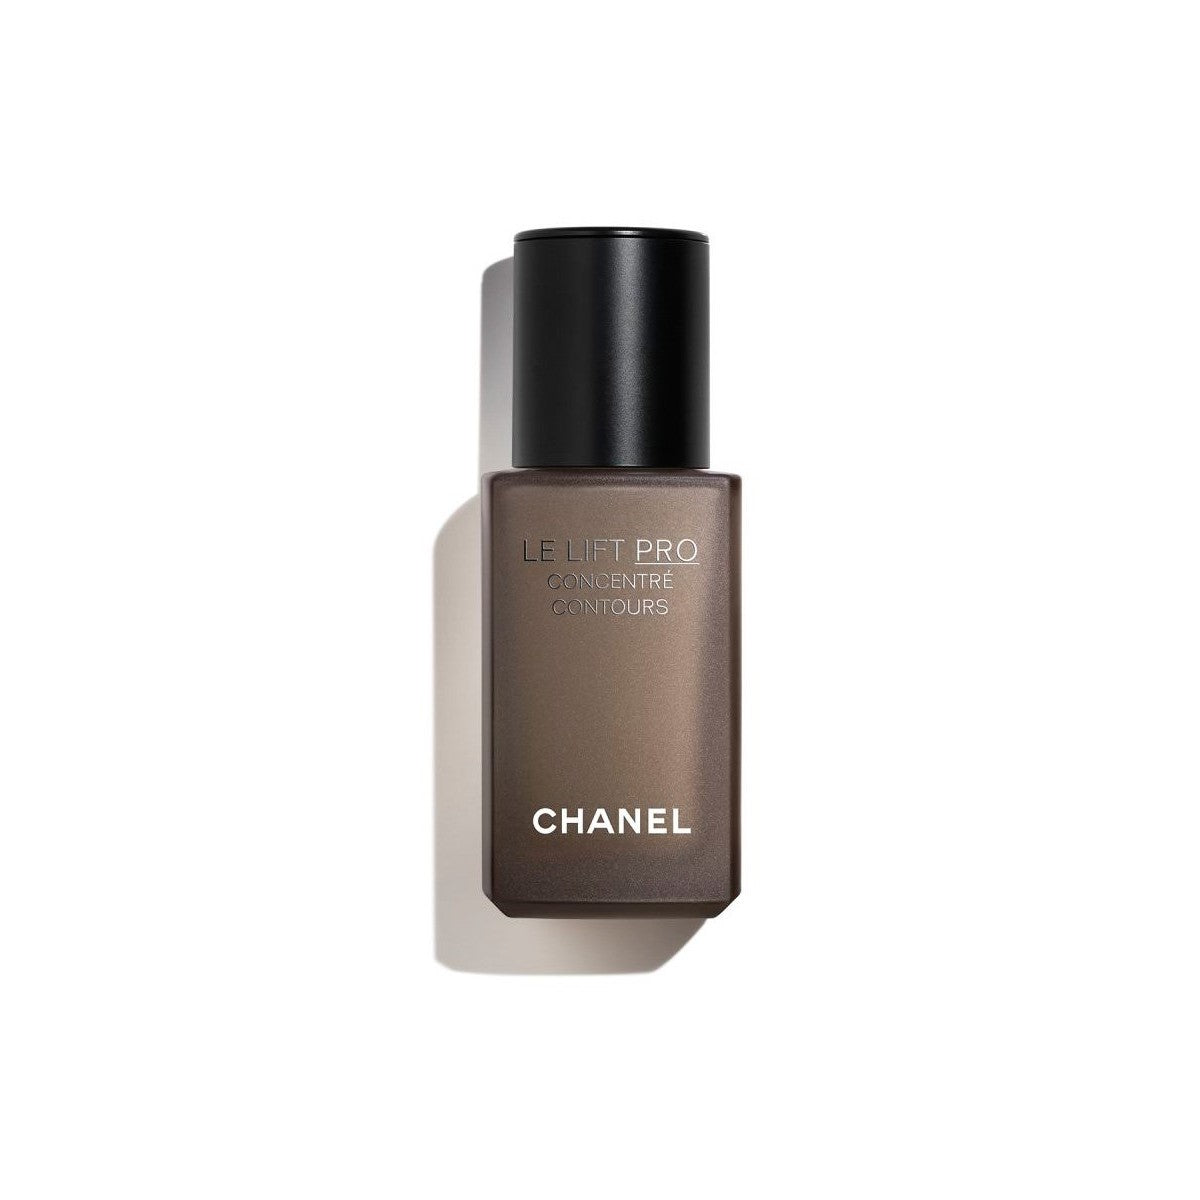 Kaufe Augenkontur Chanel Le Lift Pro 30 ml bei AWK Flagship um € 194.00